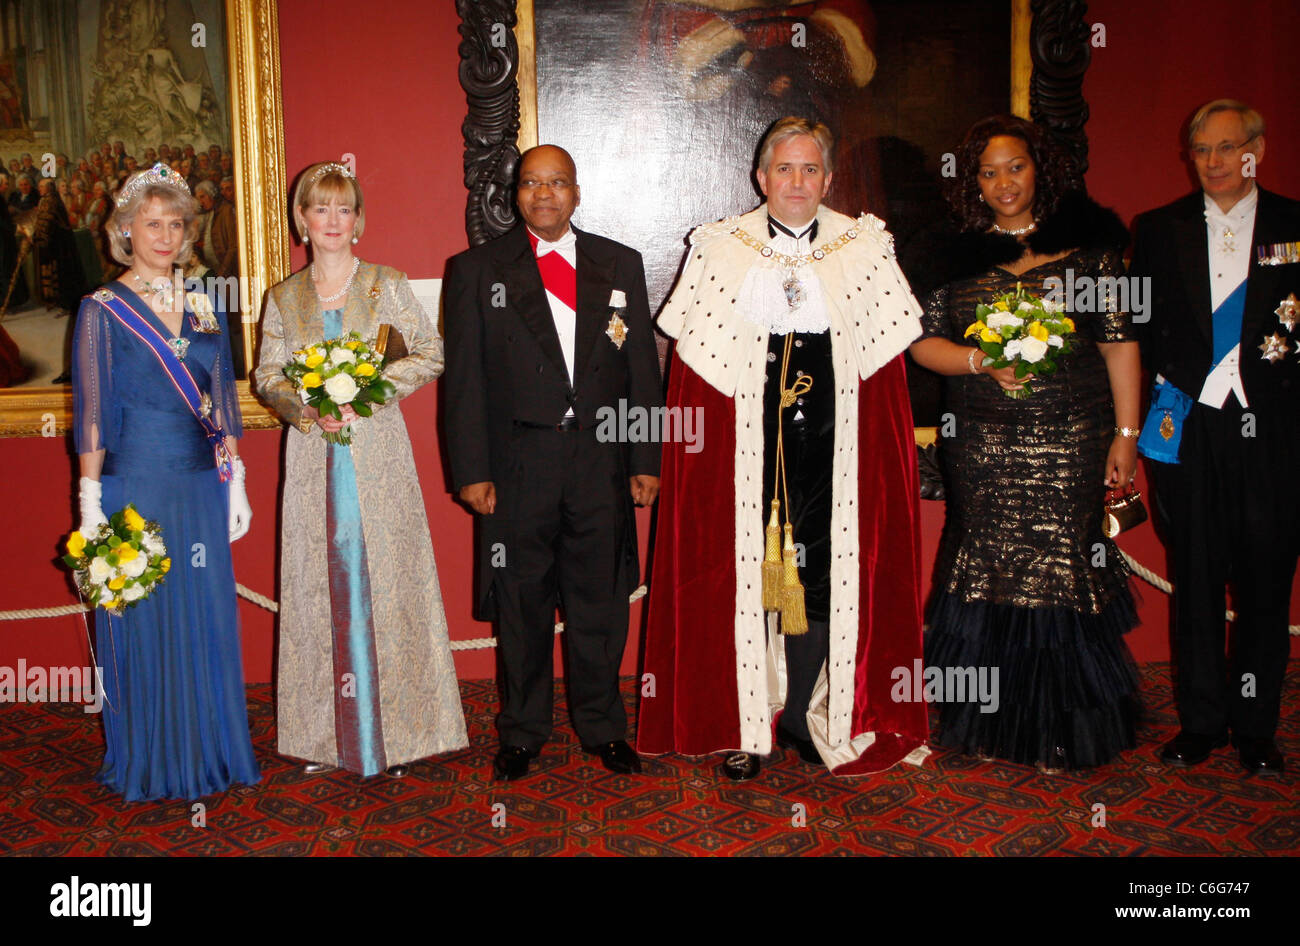 Duquesa de Gloucester, Jacob Zuma, el Alcalde Nick Anstee, Thobeka Madiba Zuma, el Duque de Gloucester, el señor Alcalde Nick Foto de stock